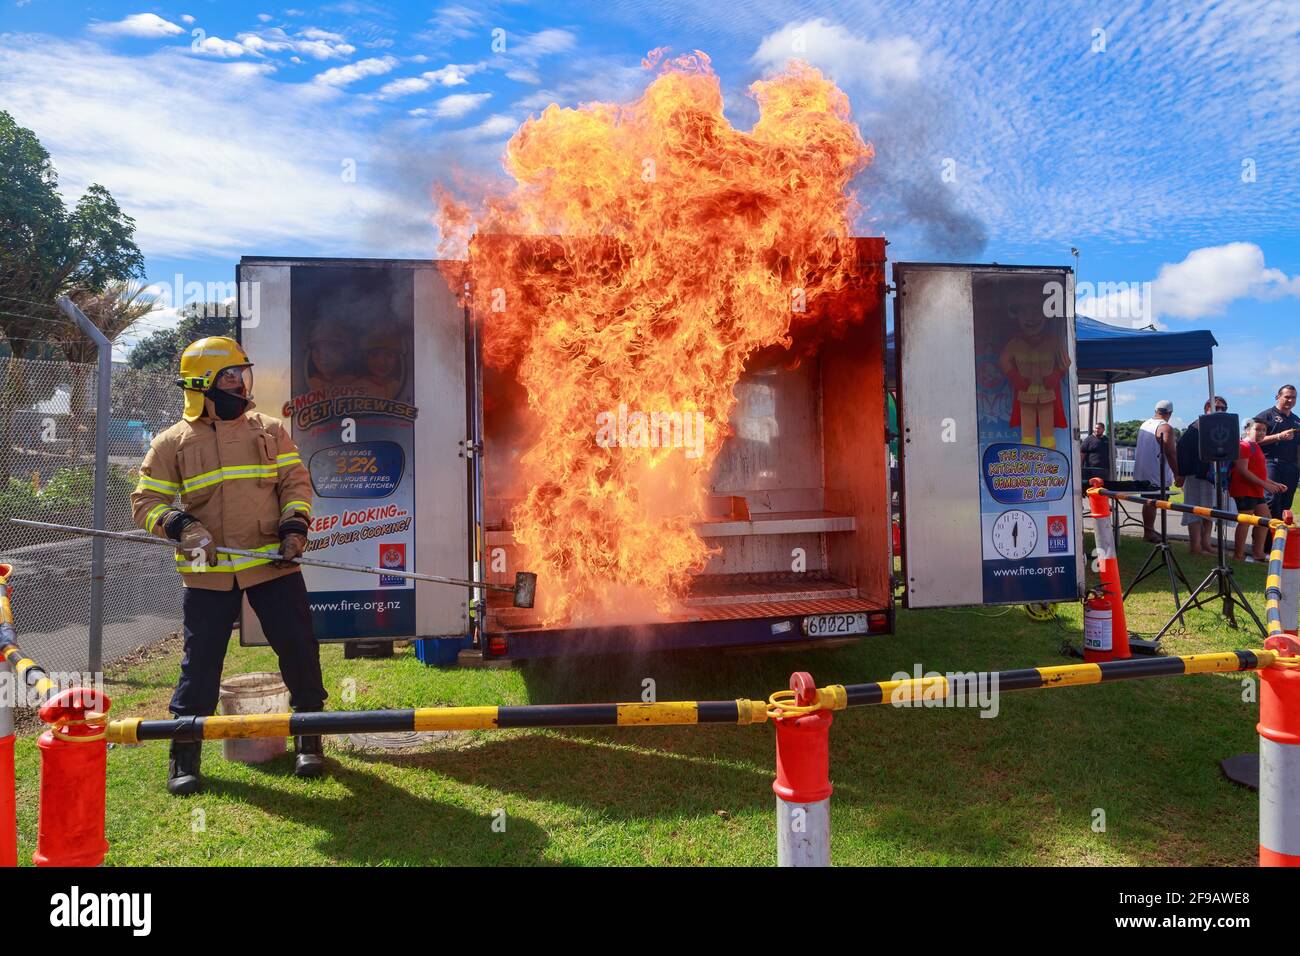 Un pompier, démontrant ce qui se passe si de l'eau est jetée sur un feu de pétrole, crée une énorme boule de feu. Démonstration de sécurité à Auckland, Nouvelle-Zélande Banque D'Images